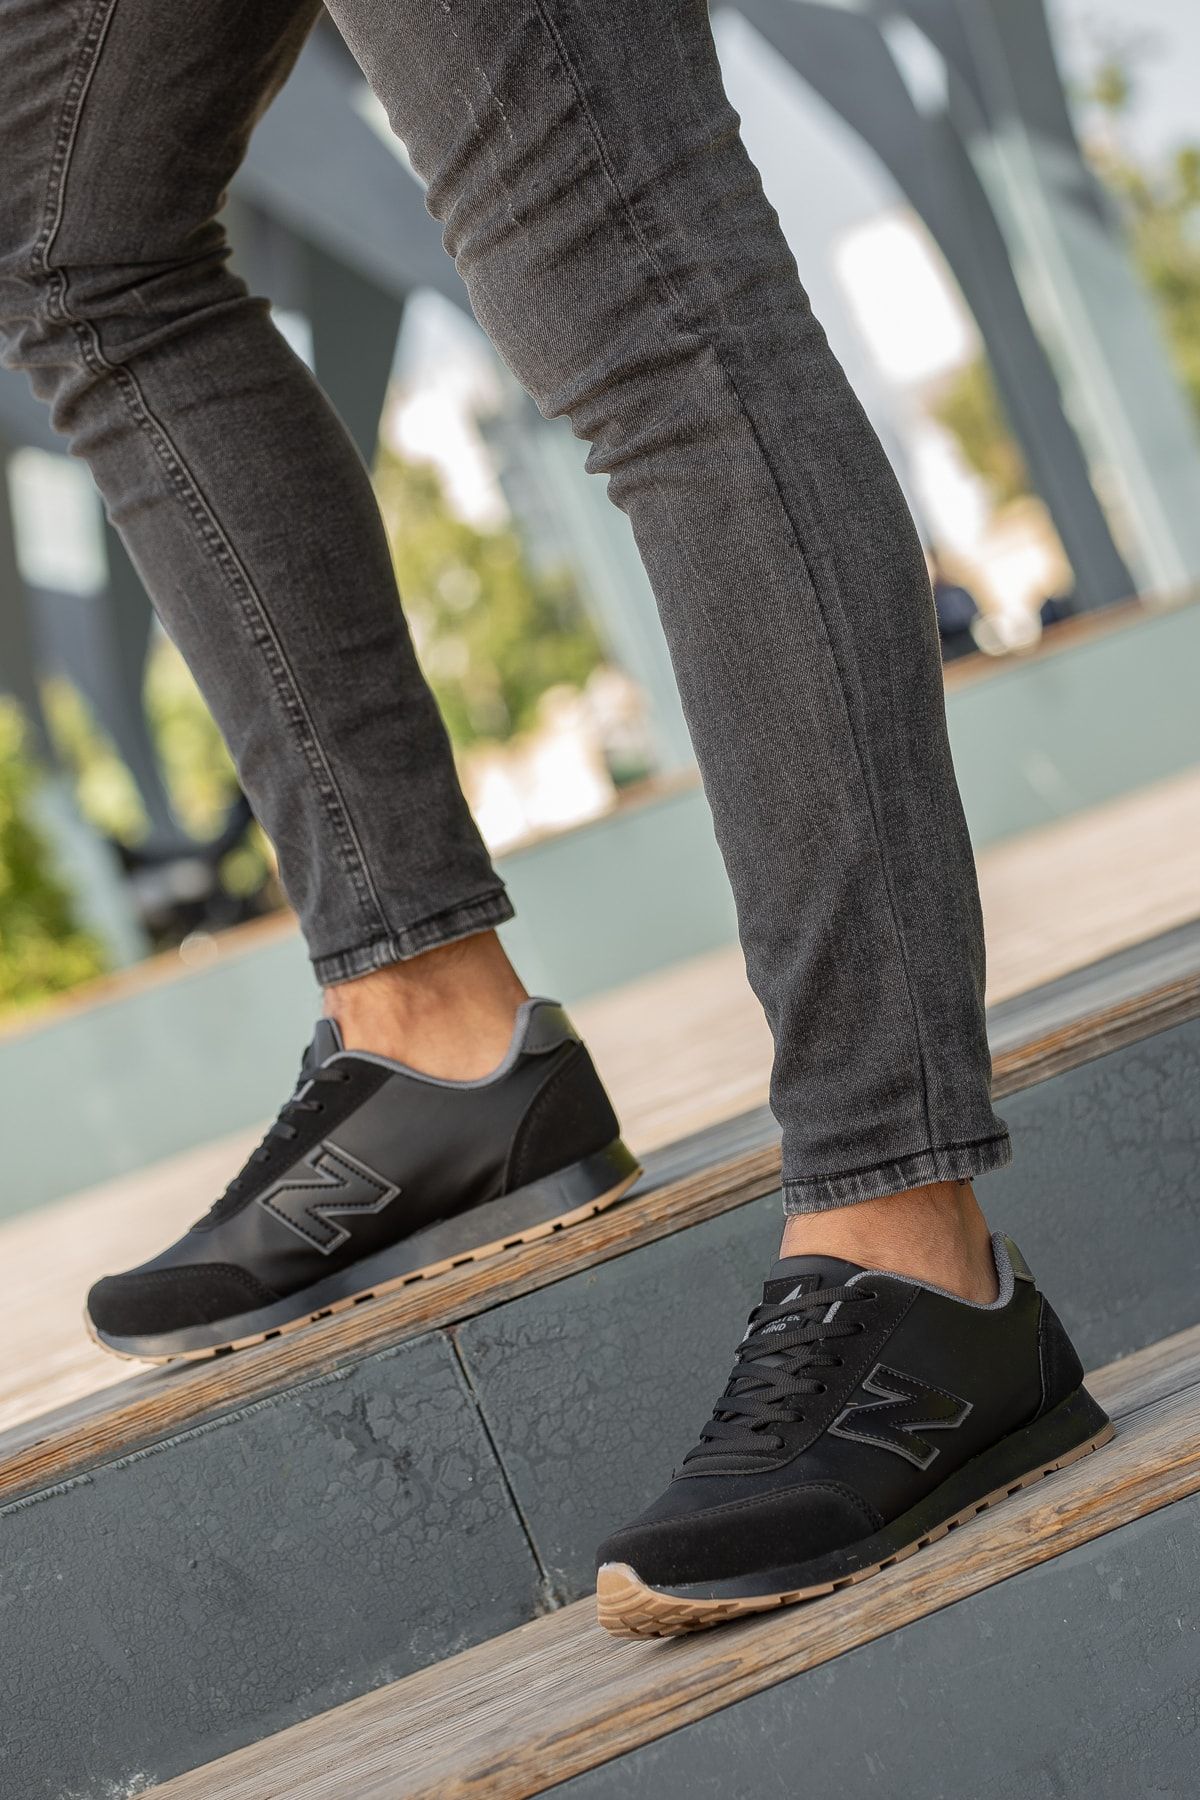 BOUIS Erkek Siyah Bağcıklı Düz Comfort Rahat Taban Casual Sneaker Esnek Yürüyüş Spor Ayakkabı